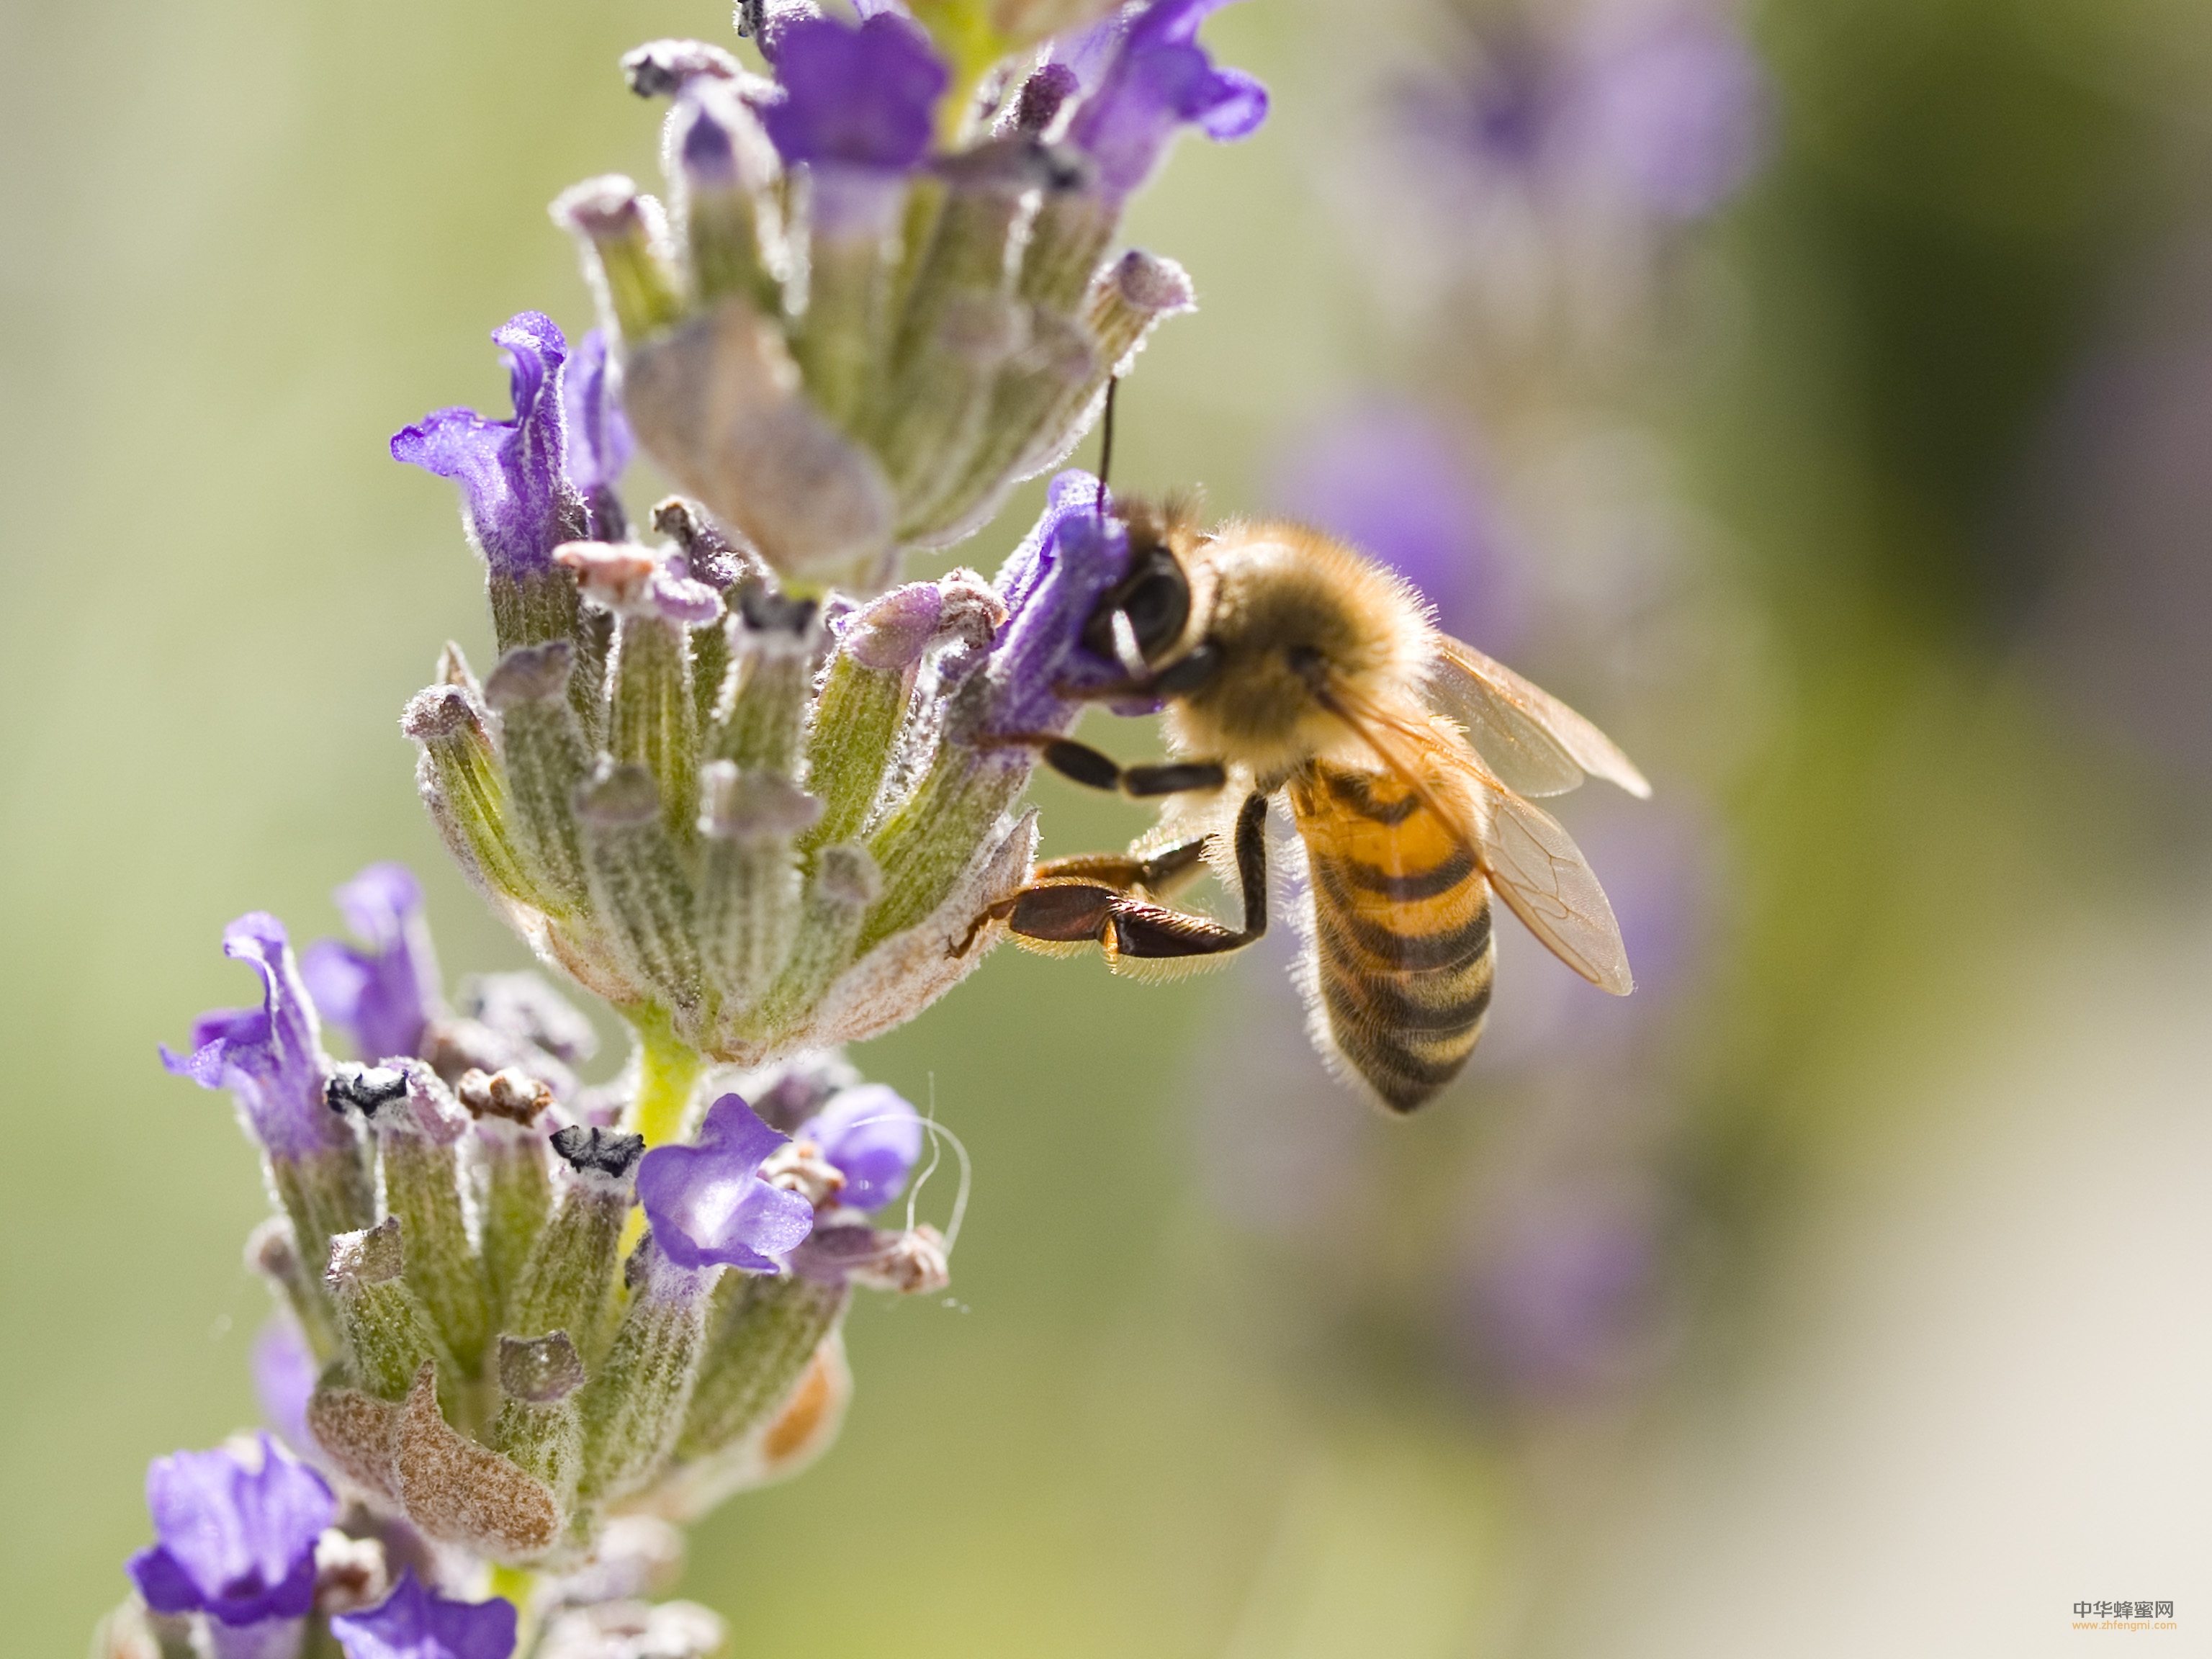 蜜蜂 养蜜蜂 蜜蜂知识 蜜蜂采蜜